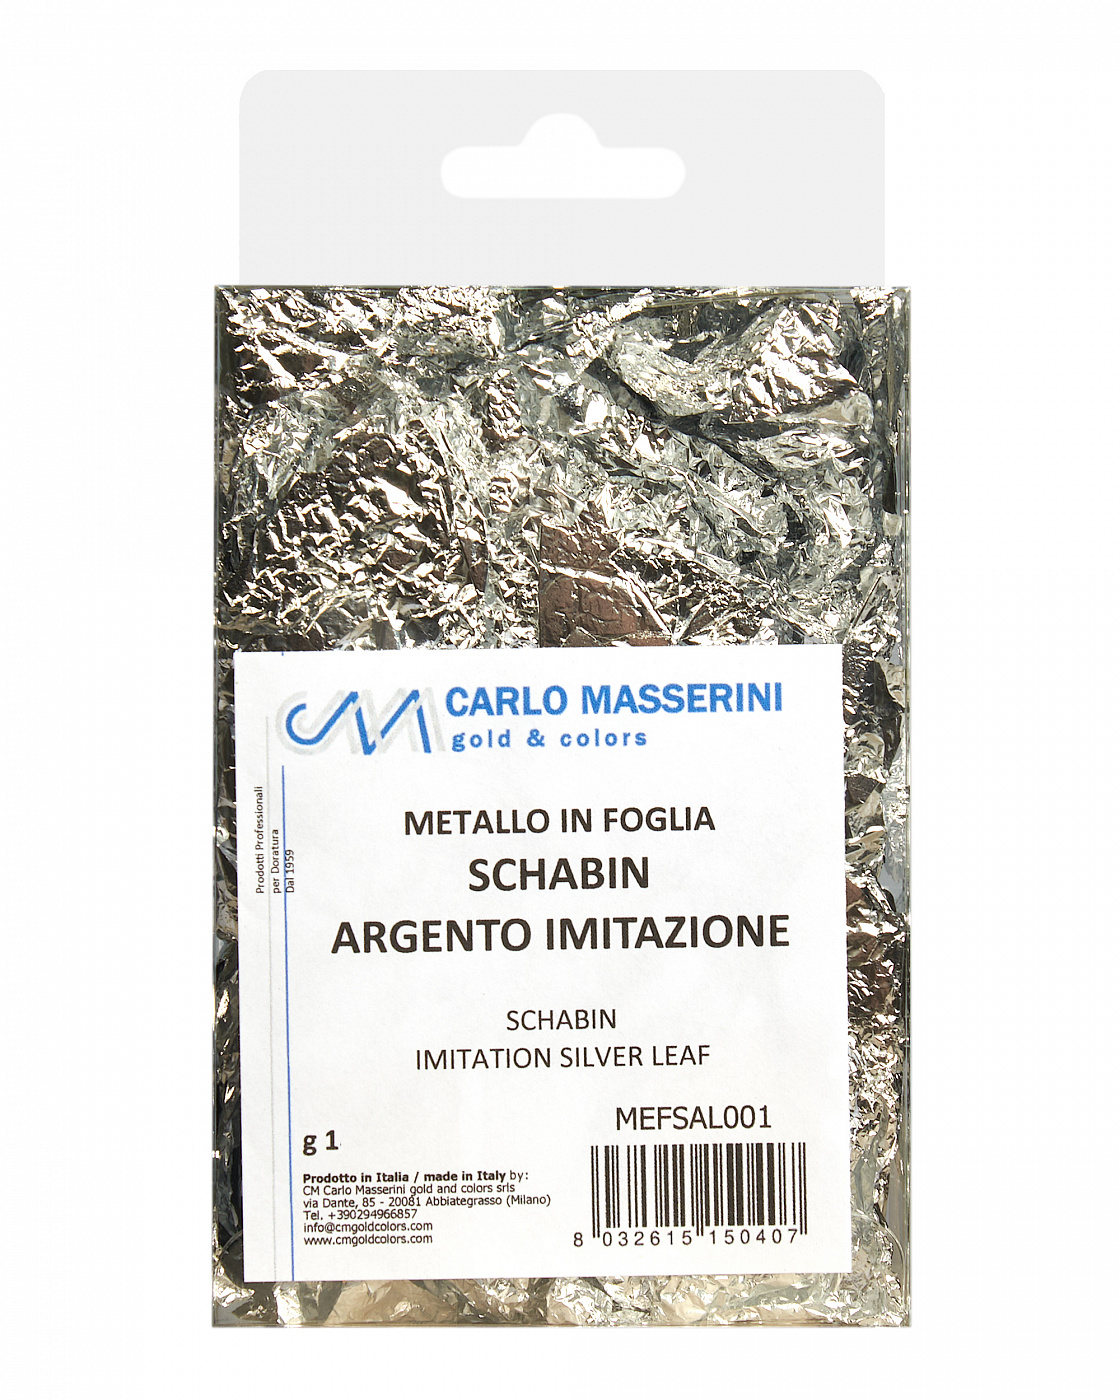 Поталь Masserini имитация серебра шабин (смятые листы) поталь крошка masserini имитация смесь золото серебро медь